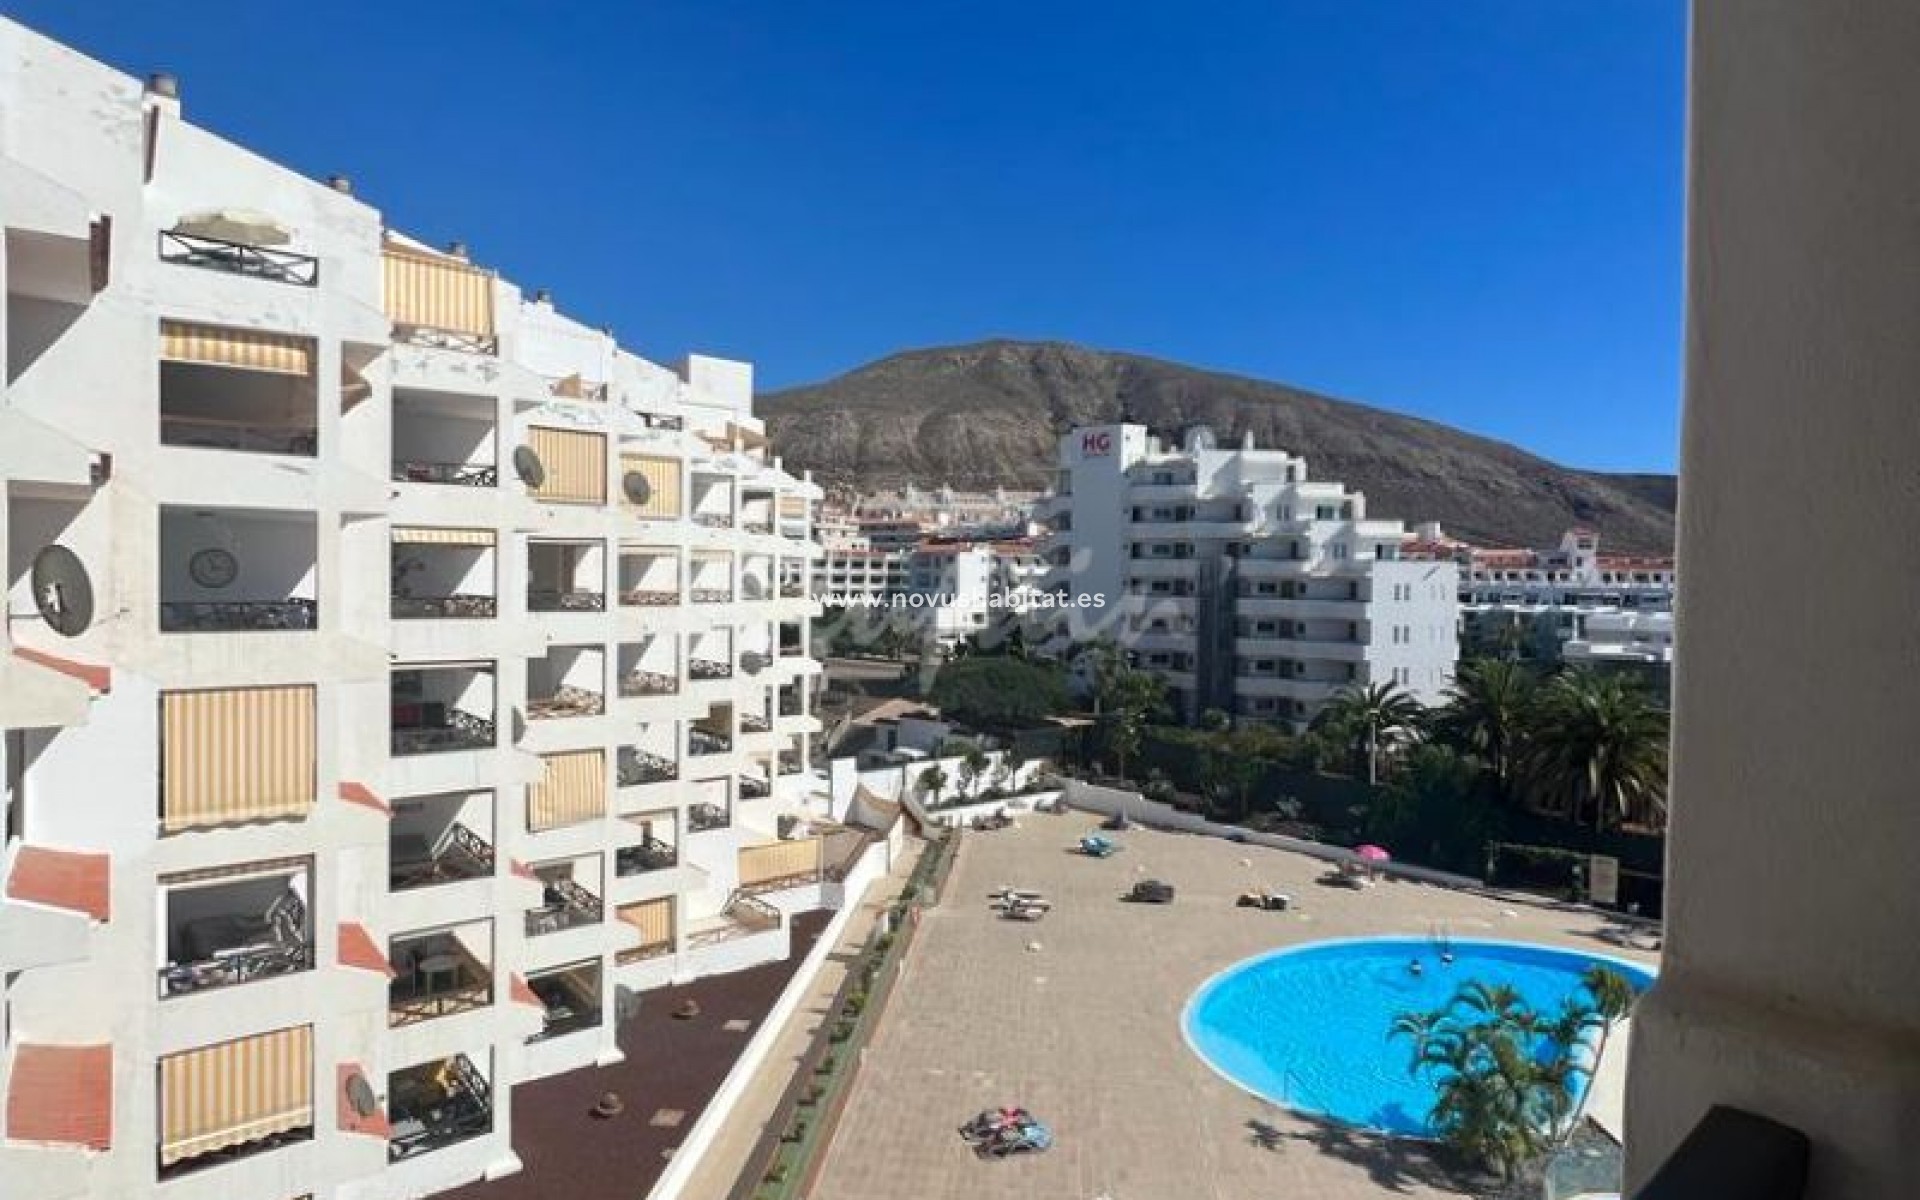 Segunda mano - Apartamento - Los Cristianos - avda amsterdam 2 38650 Los Cristianos Arona Tenerife